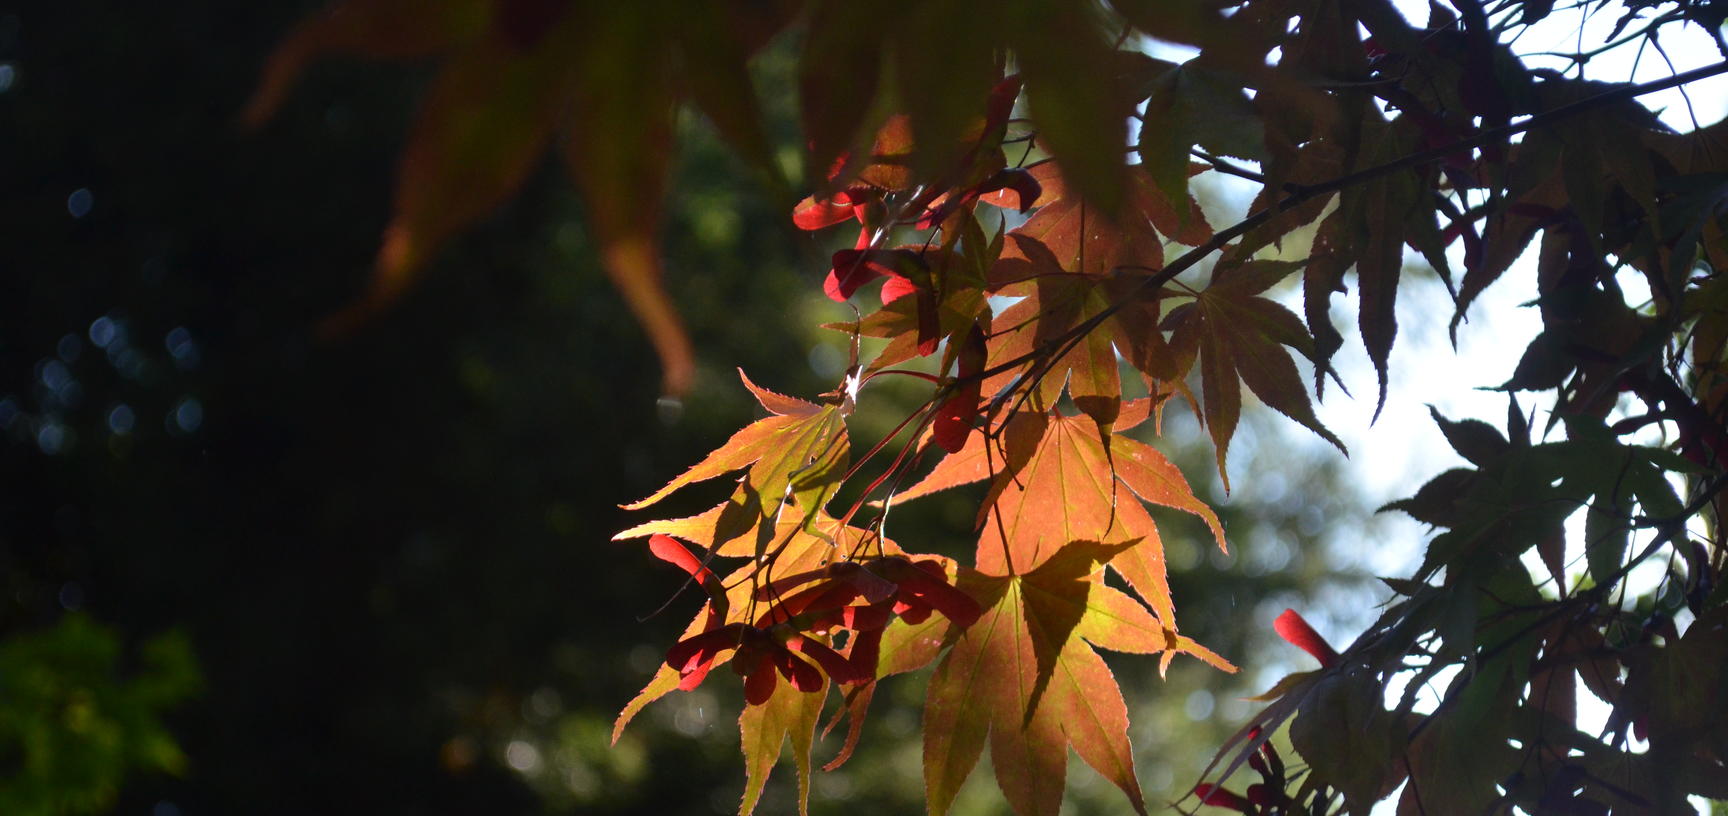 Light Through Acer Leaves